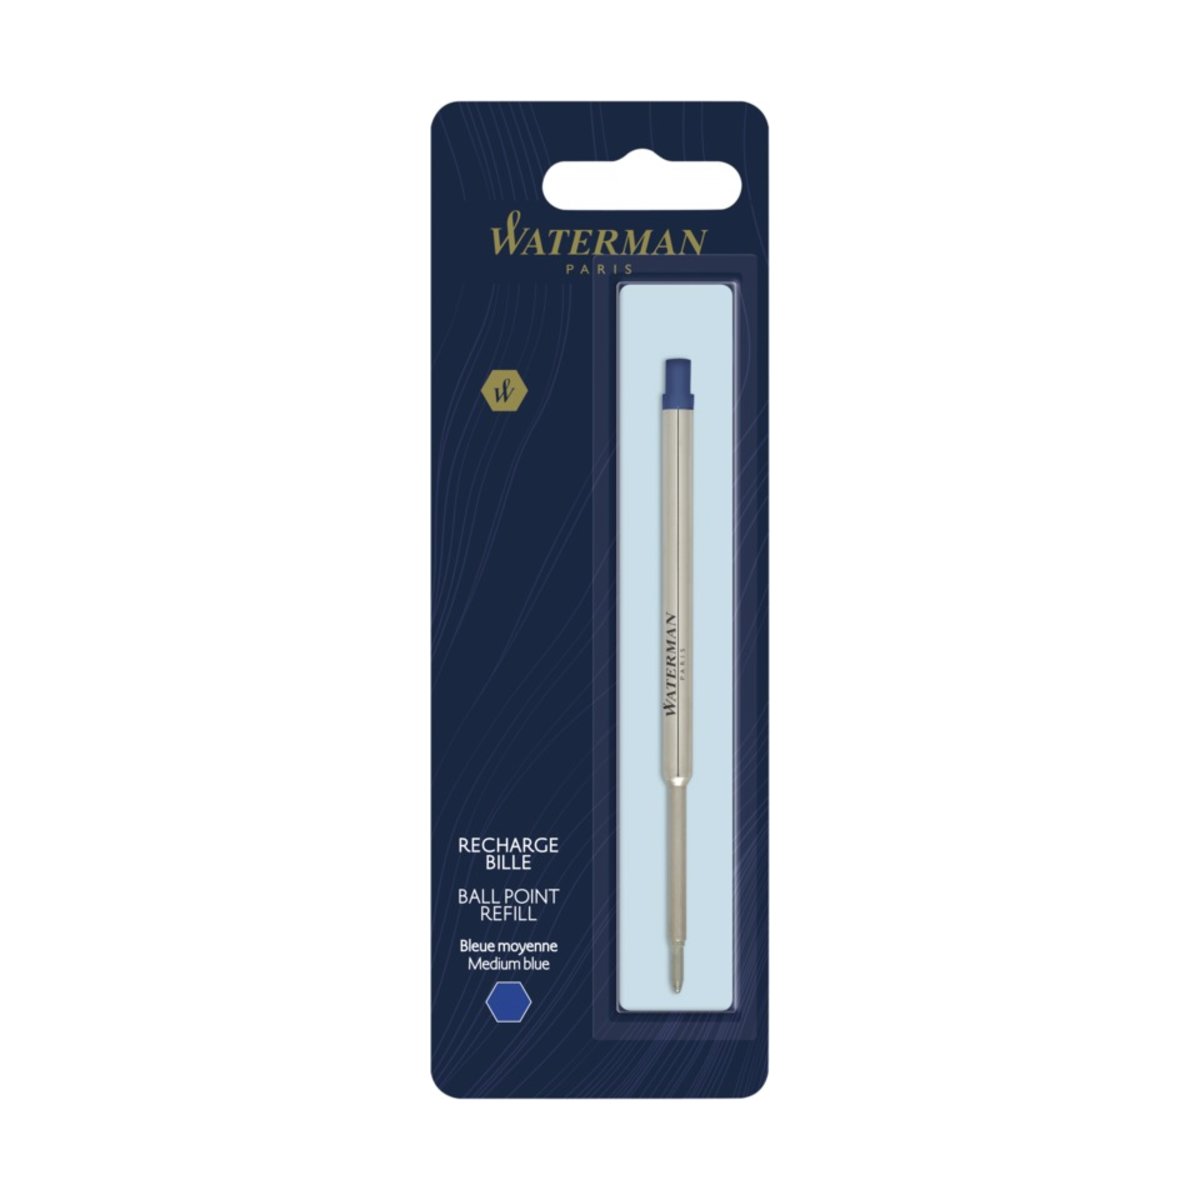 Waterman ballpoint pen refill